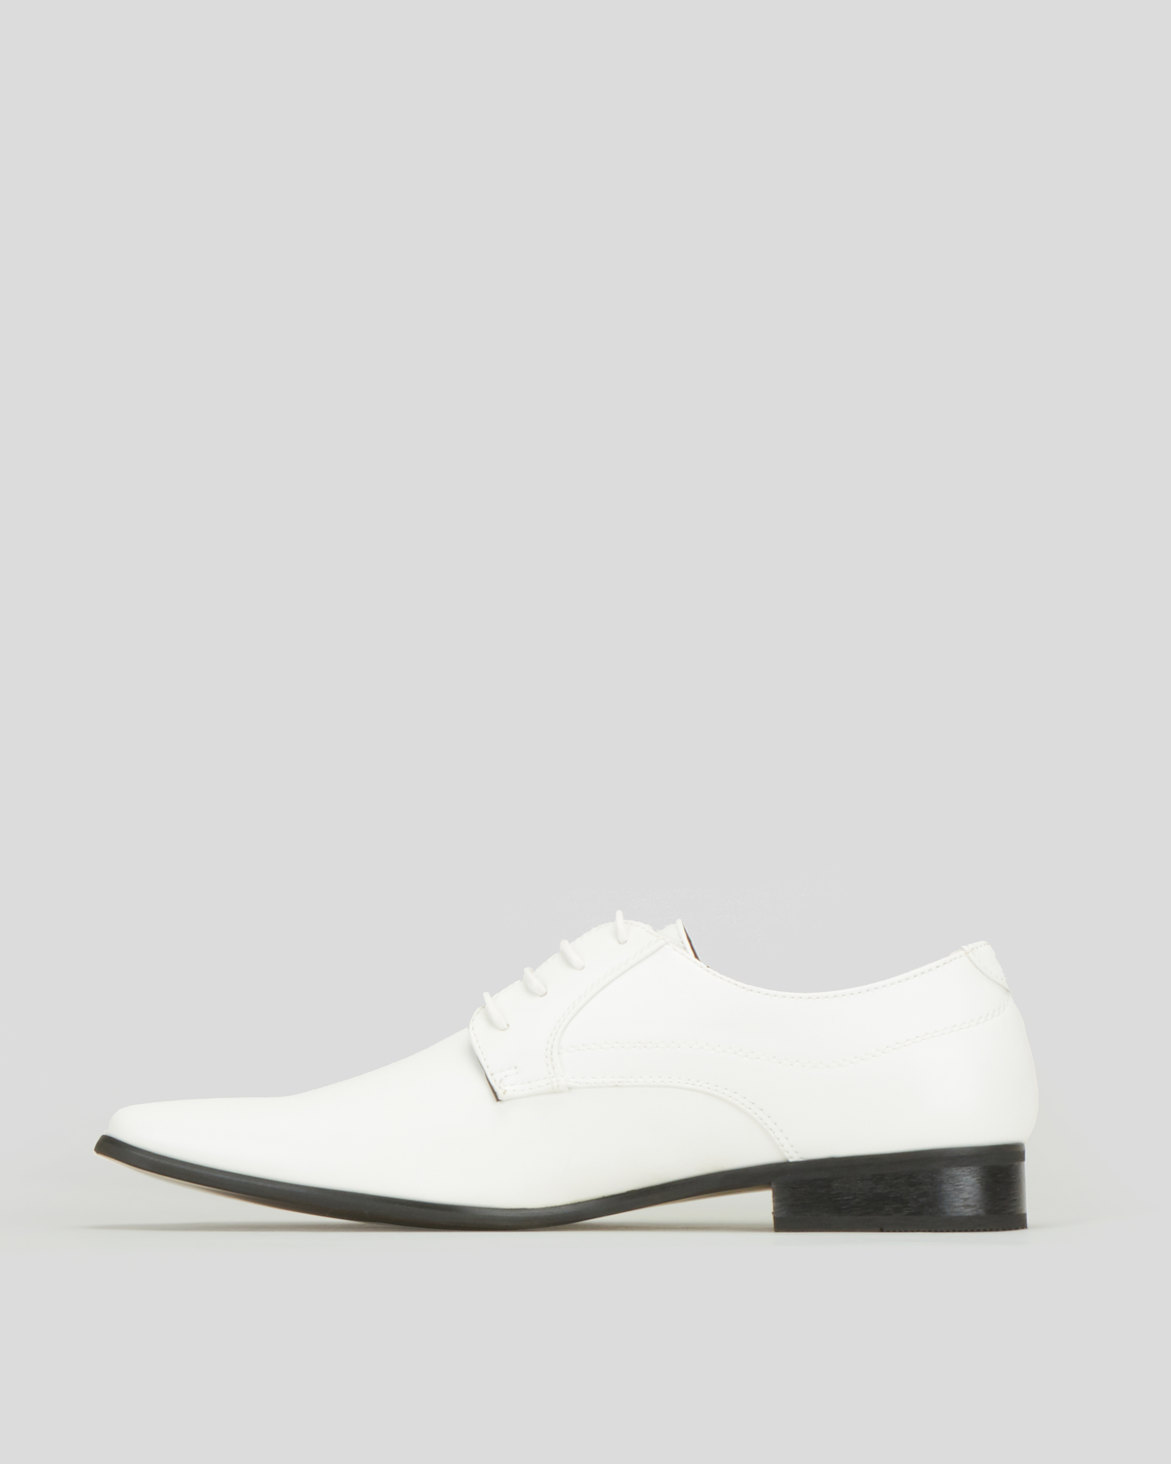 Anton Fabi Marcello Formal Shoes White | Zando